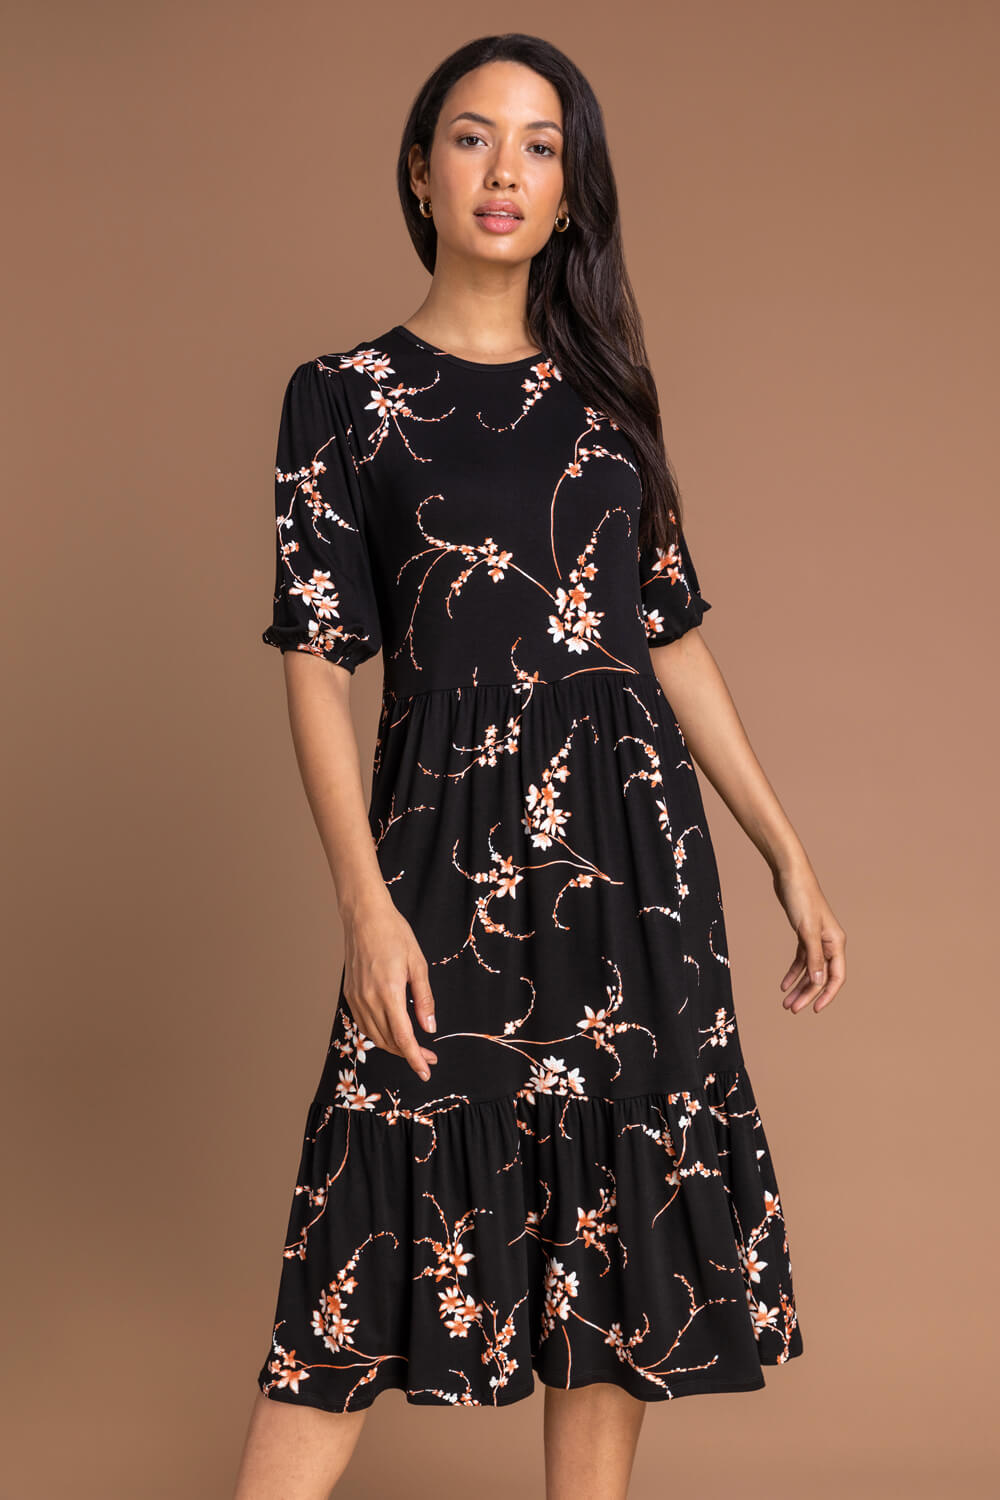 black floral dress